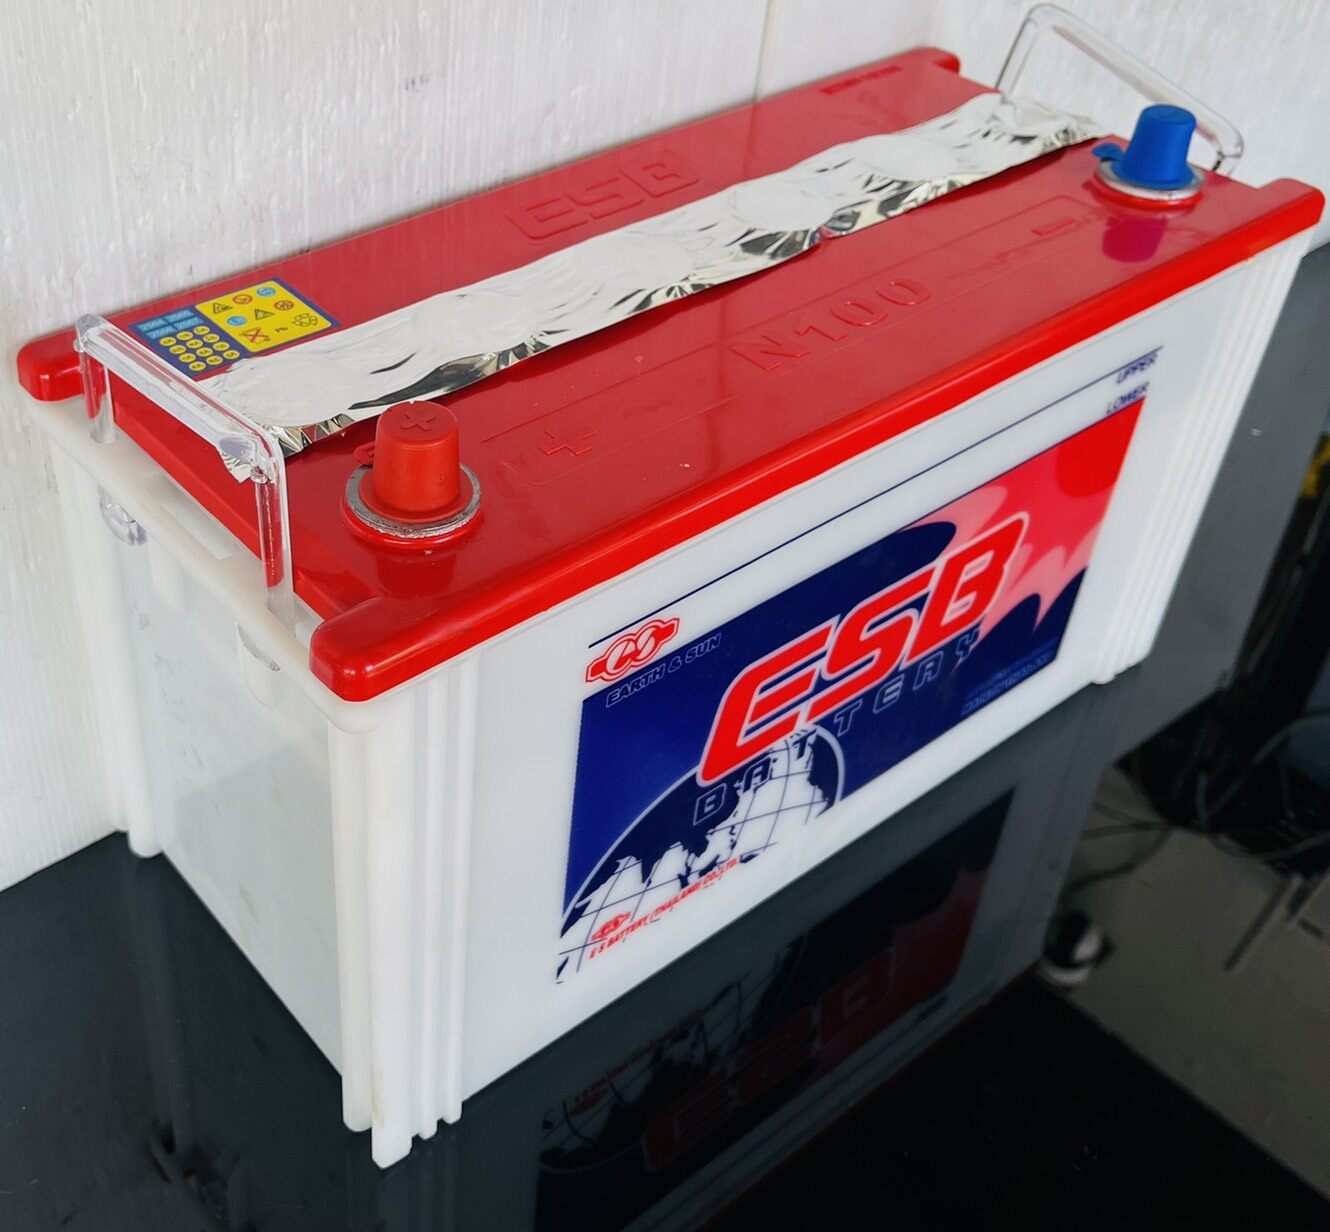 แบตเตอรี่ ESB ขนาด N100 ไฟ12V100แอมป์ แผ่นเต็ม (ยังไม่ได้เติมน้ำกรด) ลูกค้าต้องเติมน้ำกรดและชาร์จไฟก่อนใช้งาน รับประกันโดย Siam Battery